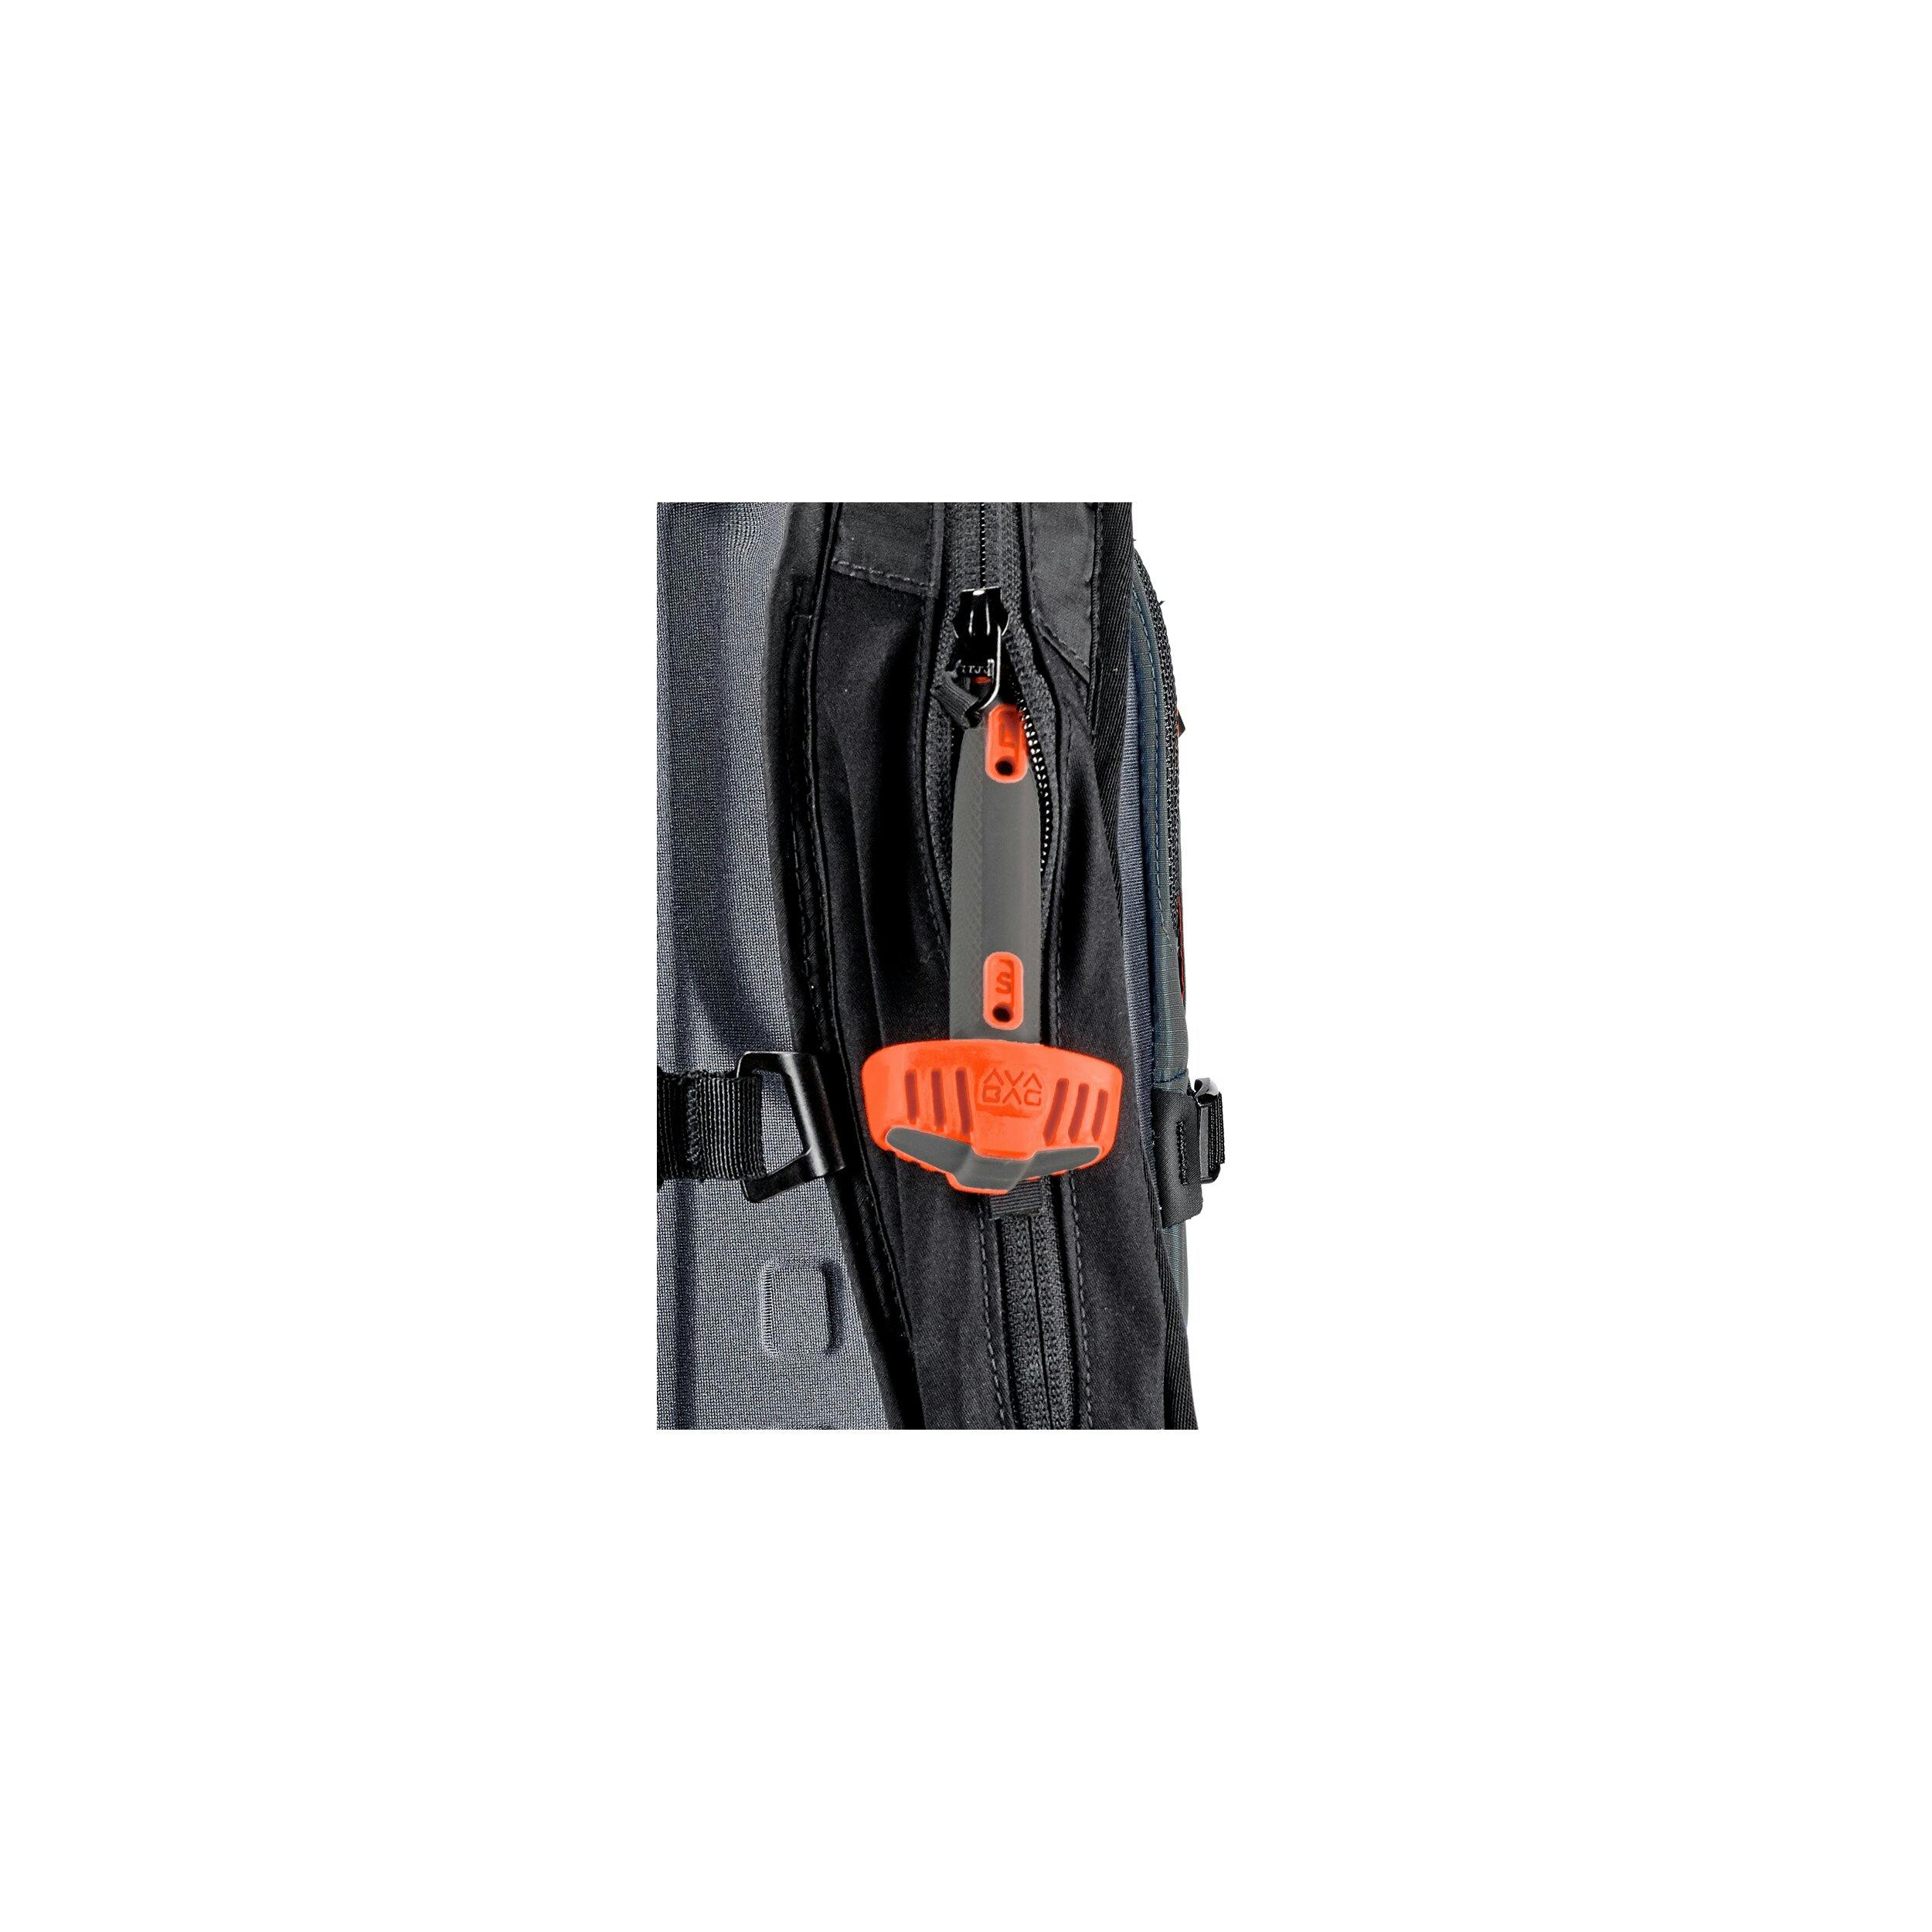 Ortovox Ascent 30 Avabag Backpack